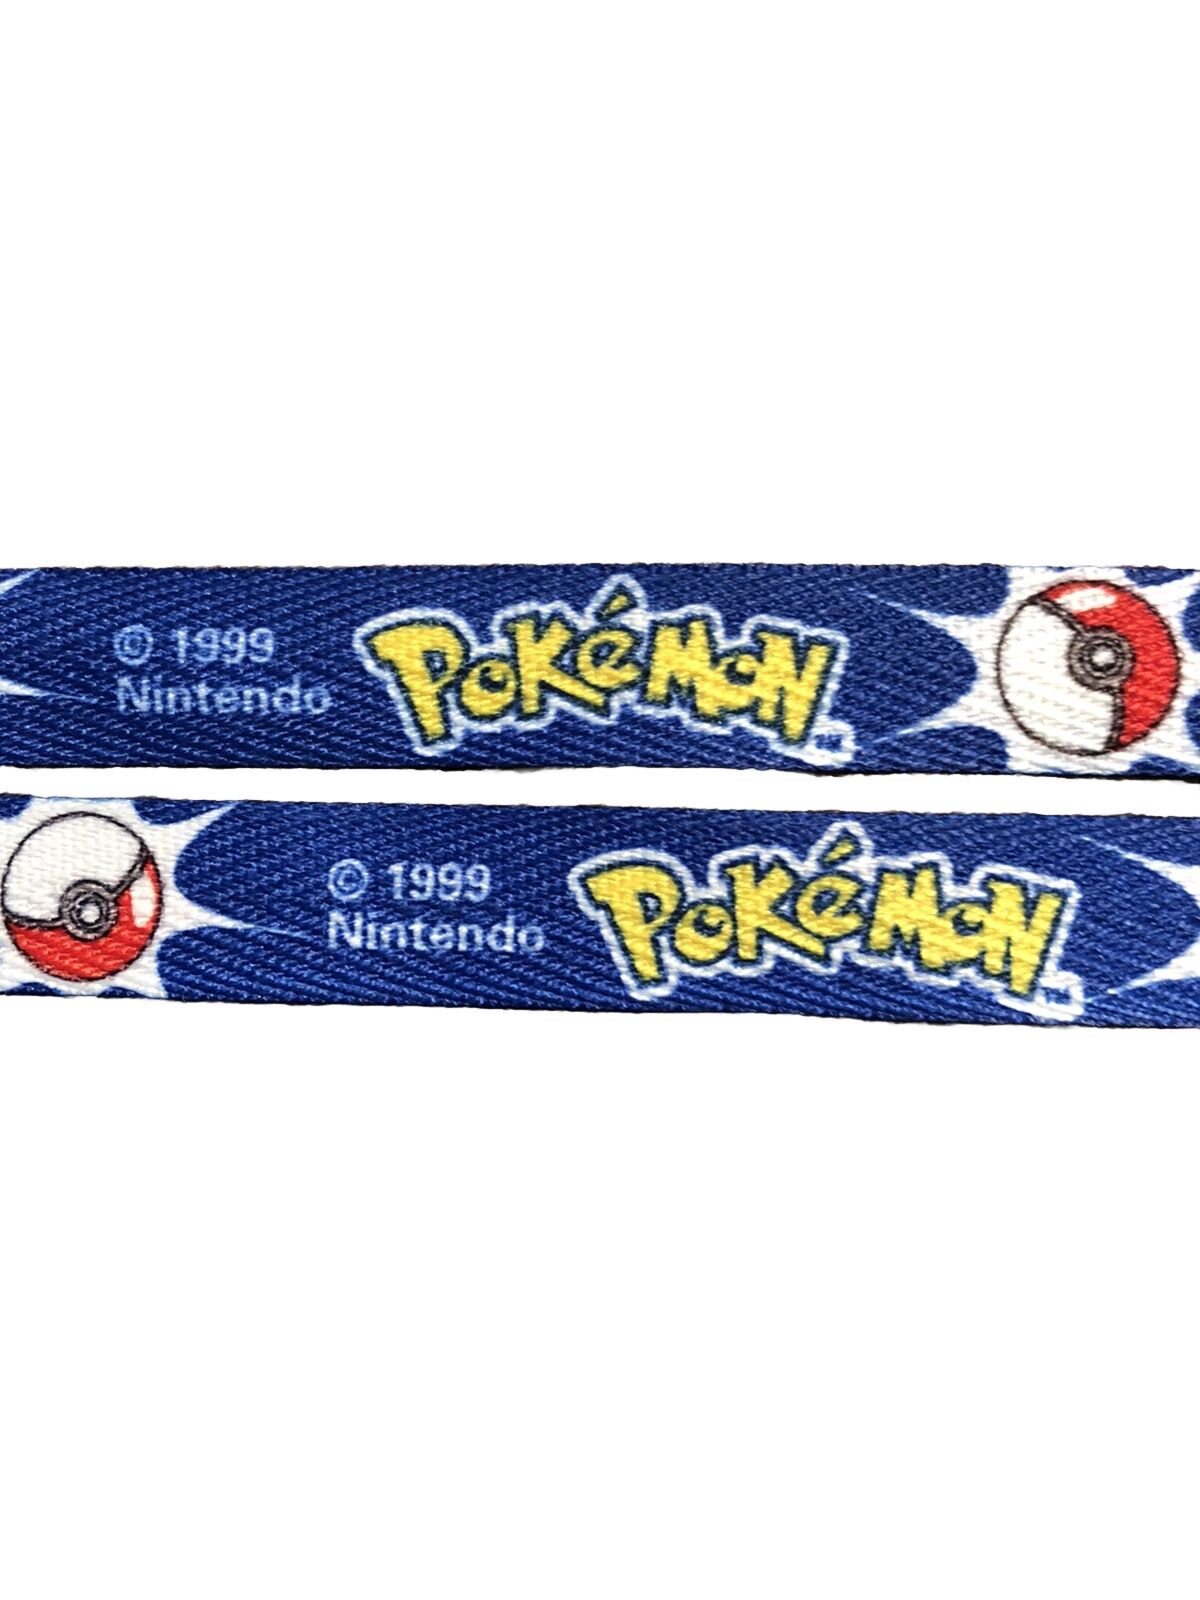 Pokemon Rare 1999 Shoelaces Blue ‘Gotta Catch ‘Em All’ Vintage